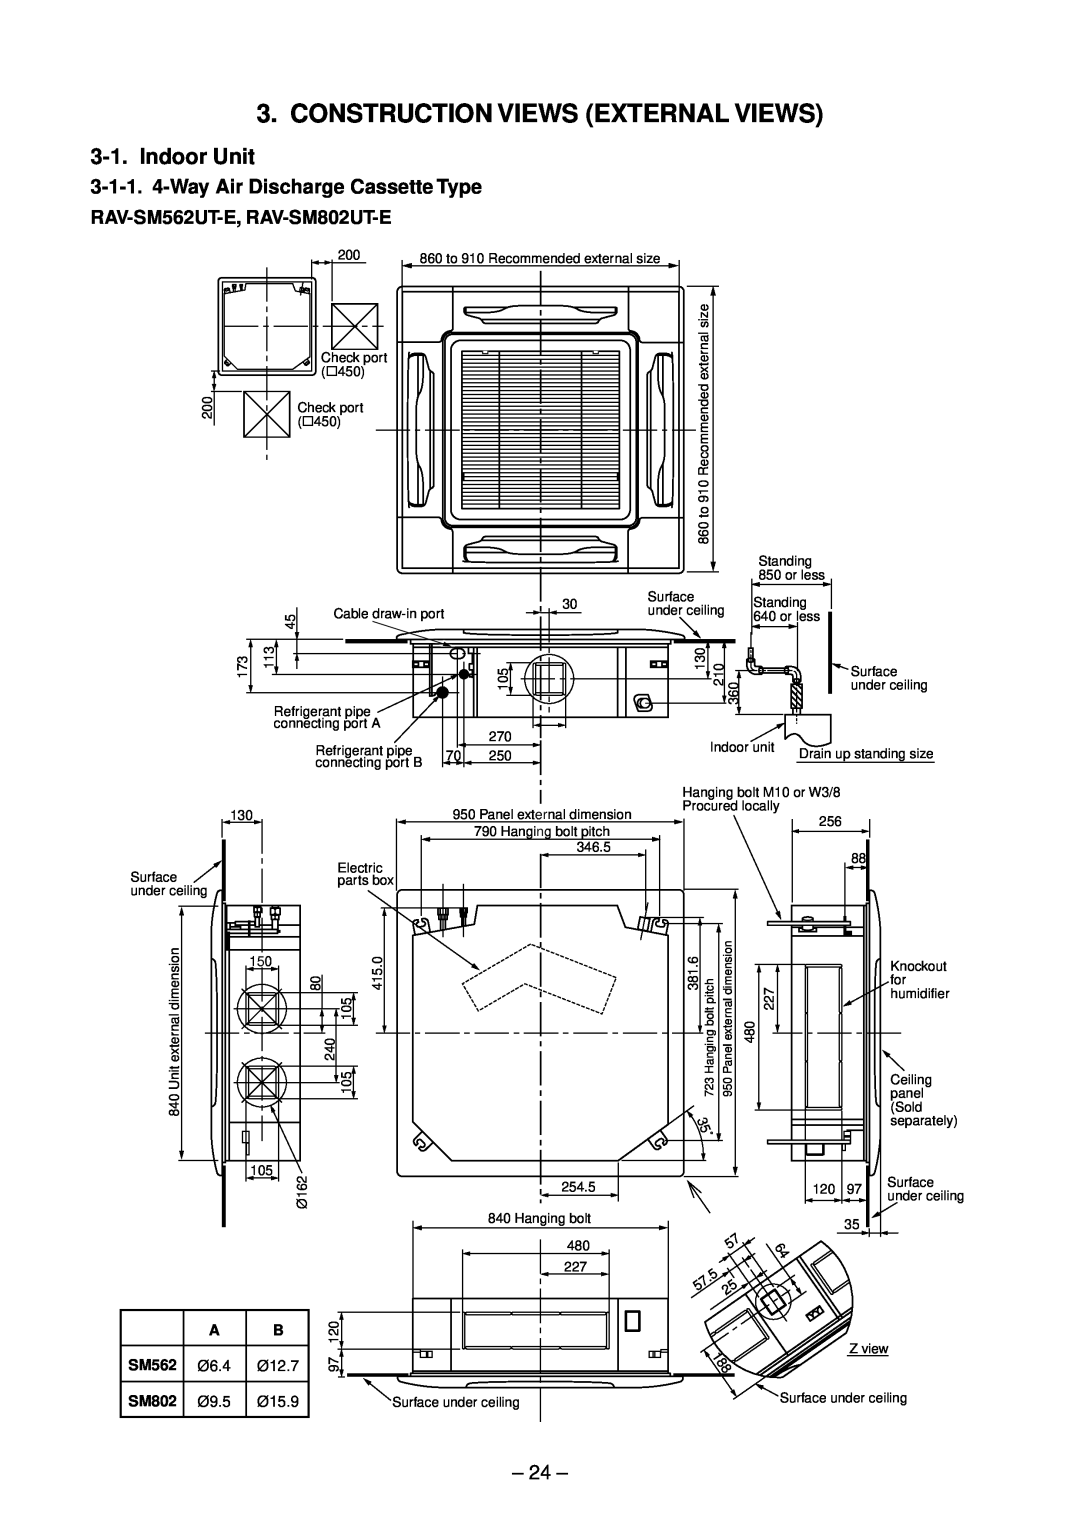 Toshiba RAV-SM1102UT-E Construction Views External Views, Indoor Unit, 3-1-1. 4-WayAir Discharge Cassette Type, 24 